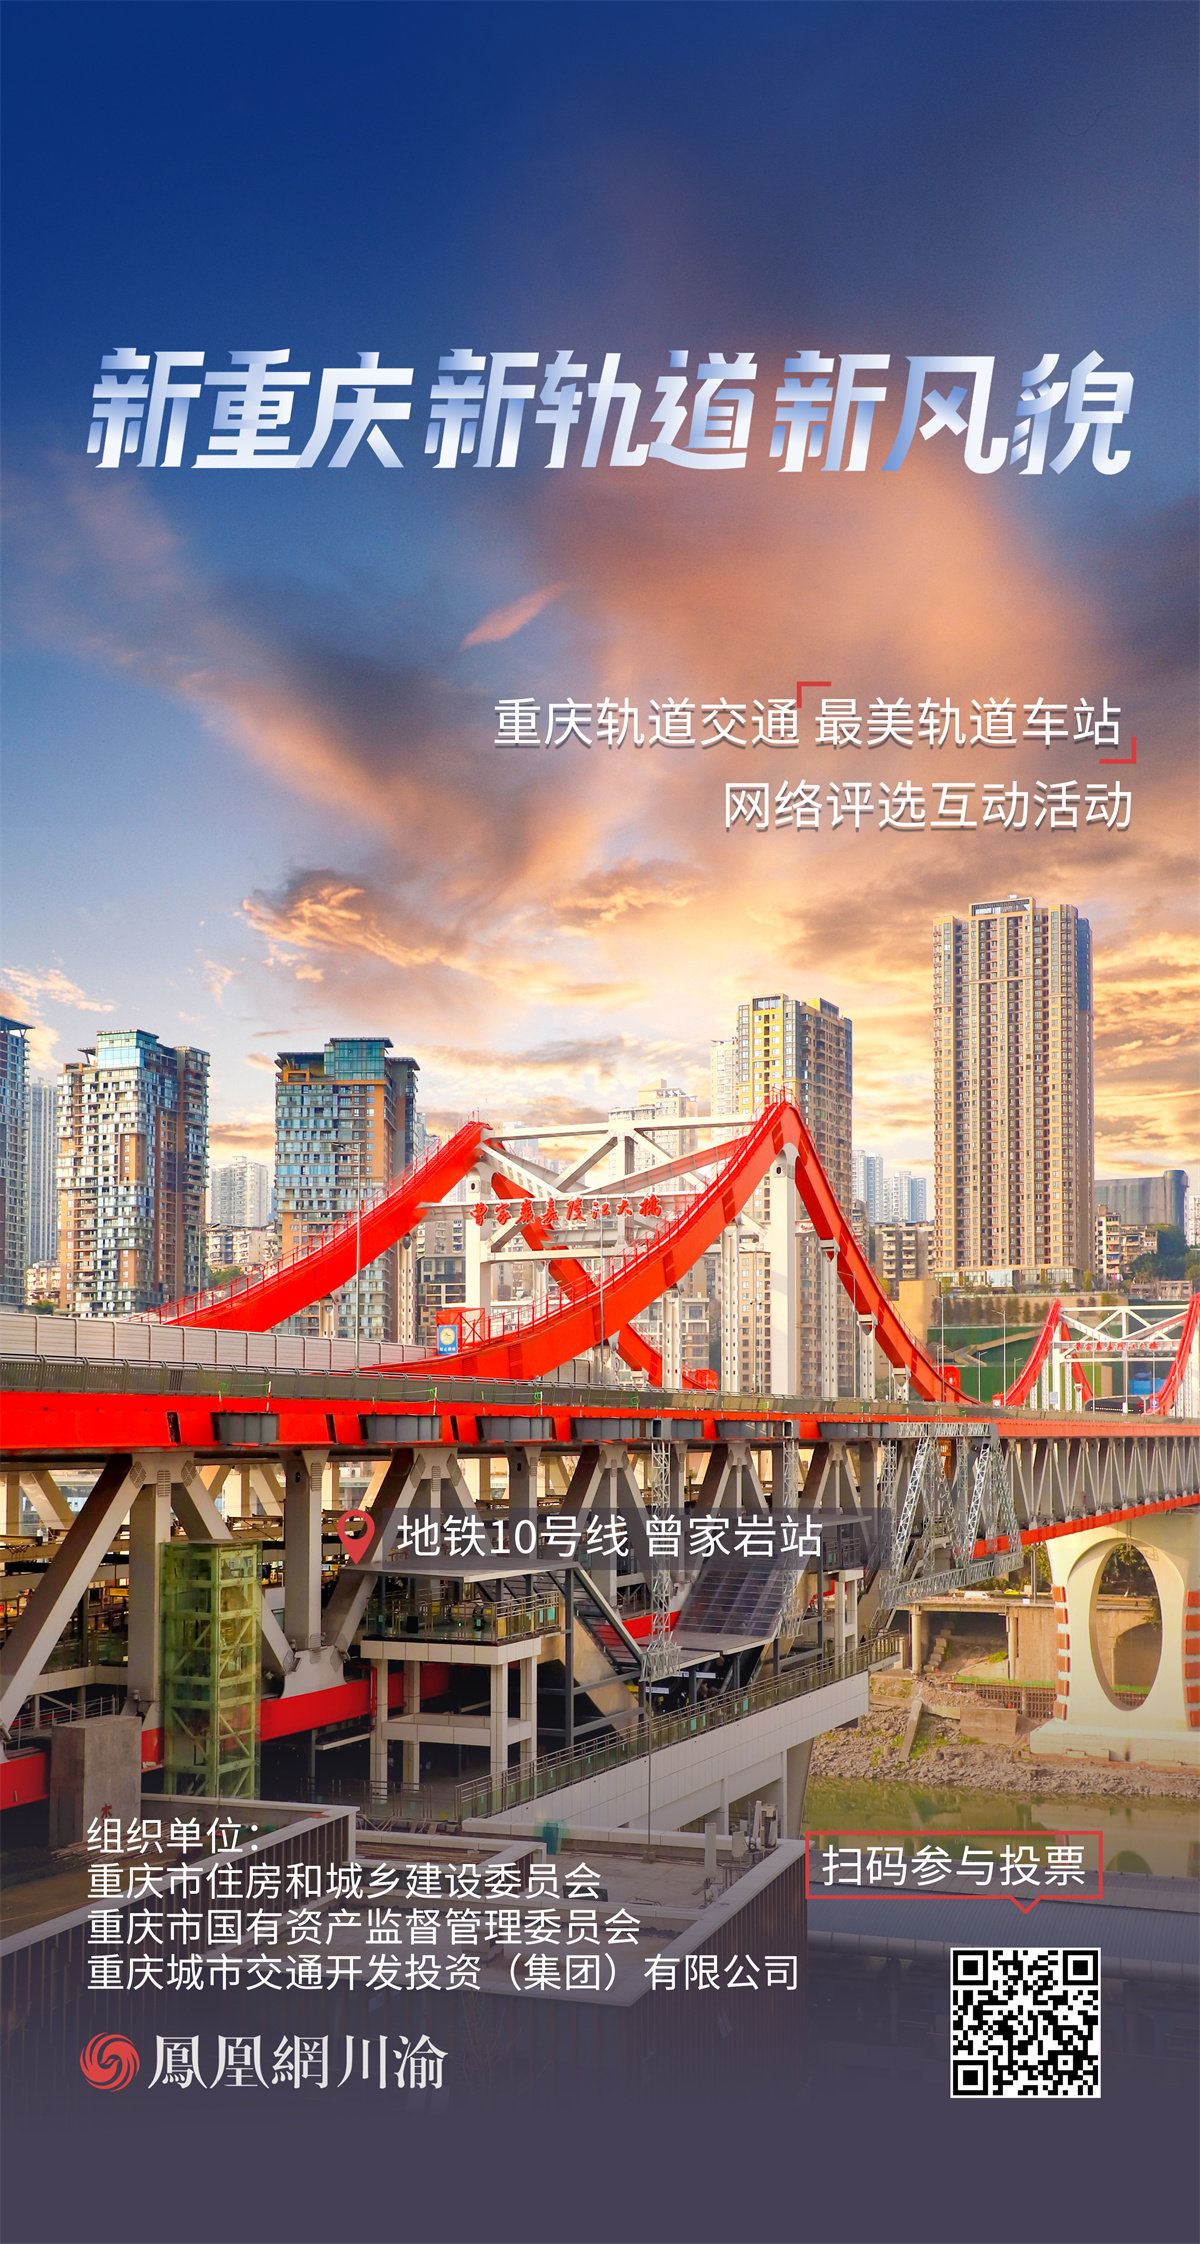 新重庆 新轨道 新风貌丨打卡重庆轨道交通“最美车站”⑥地铁9号线、10号线